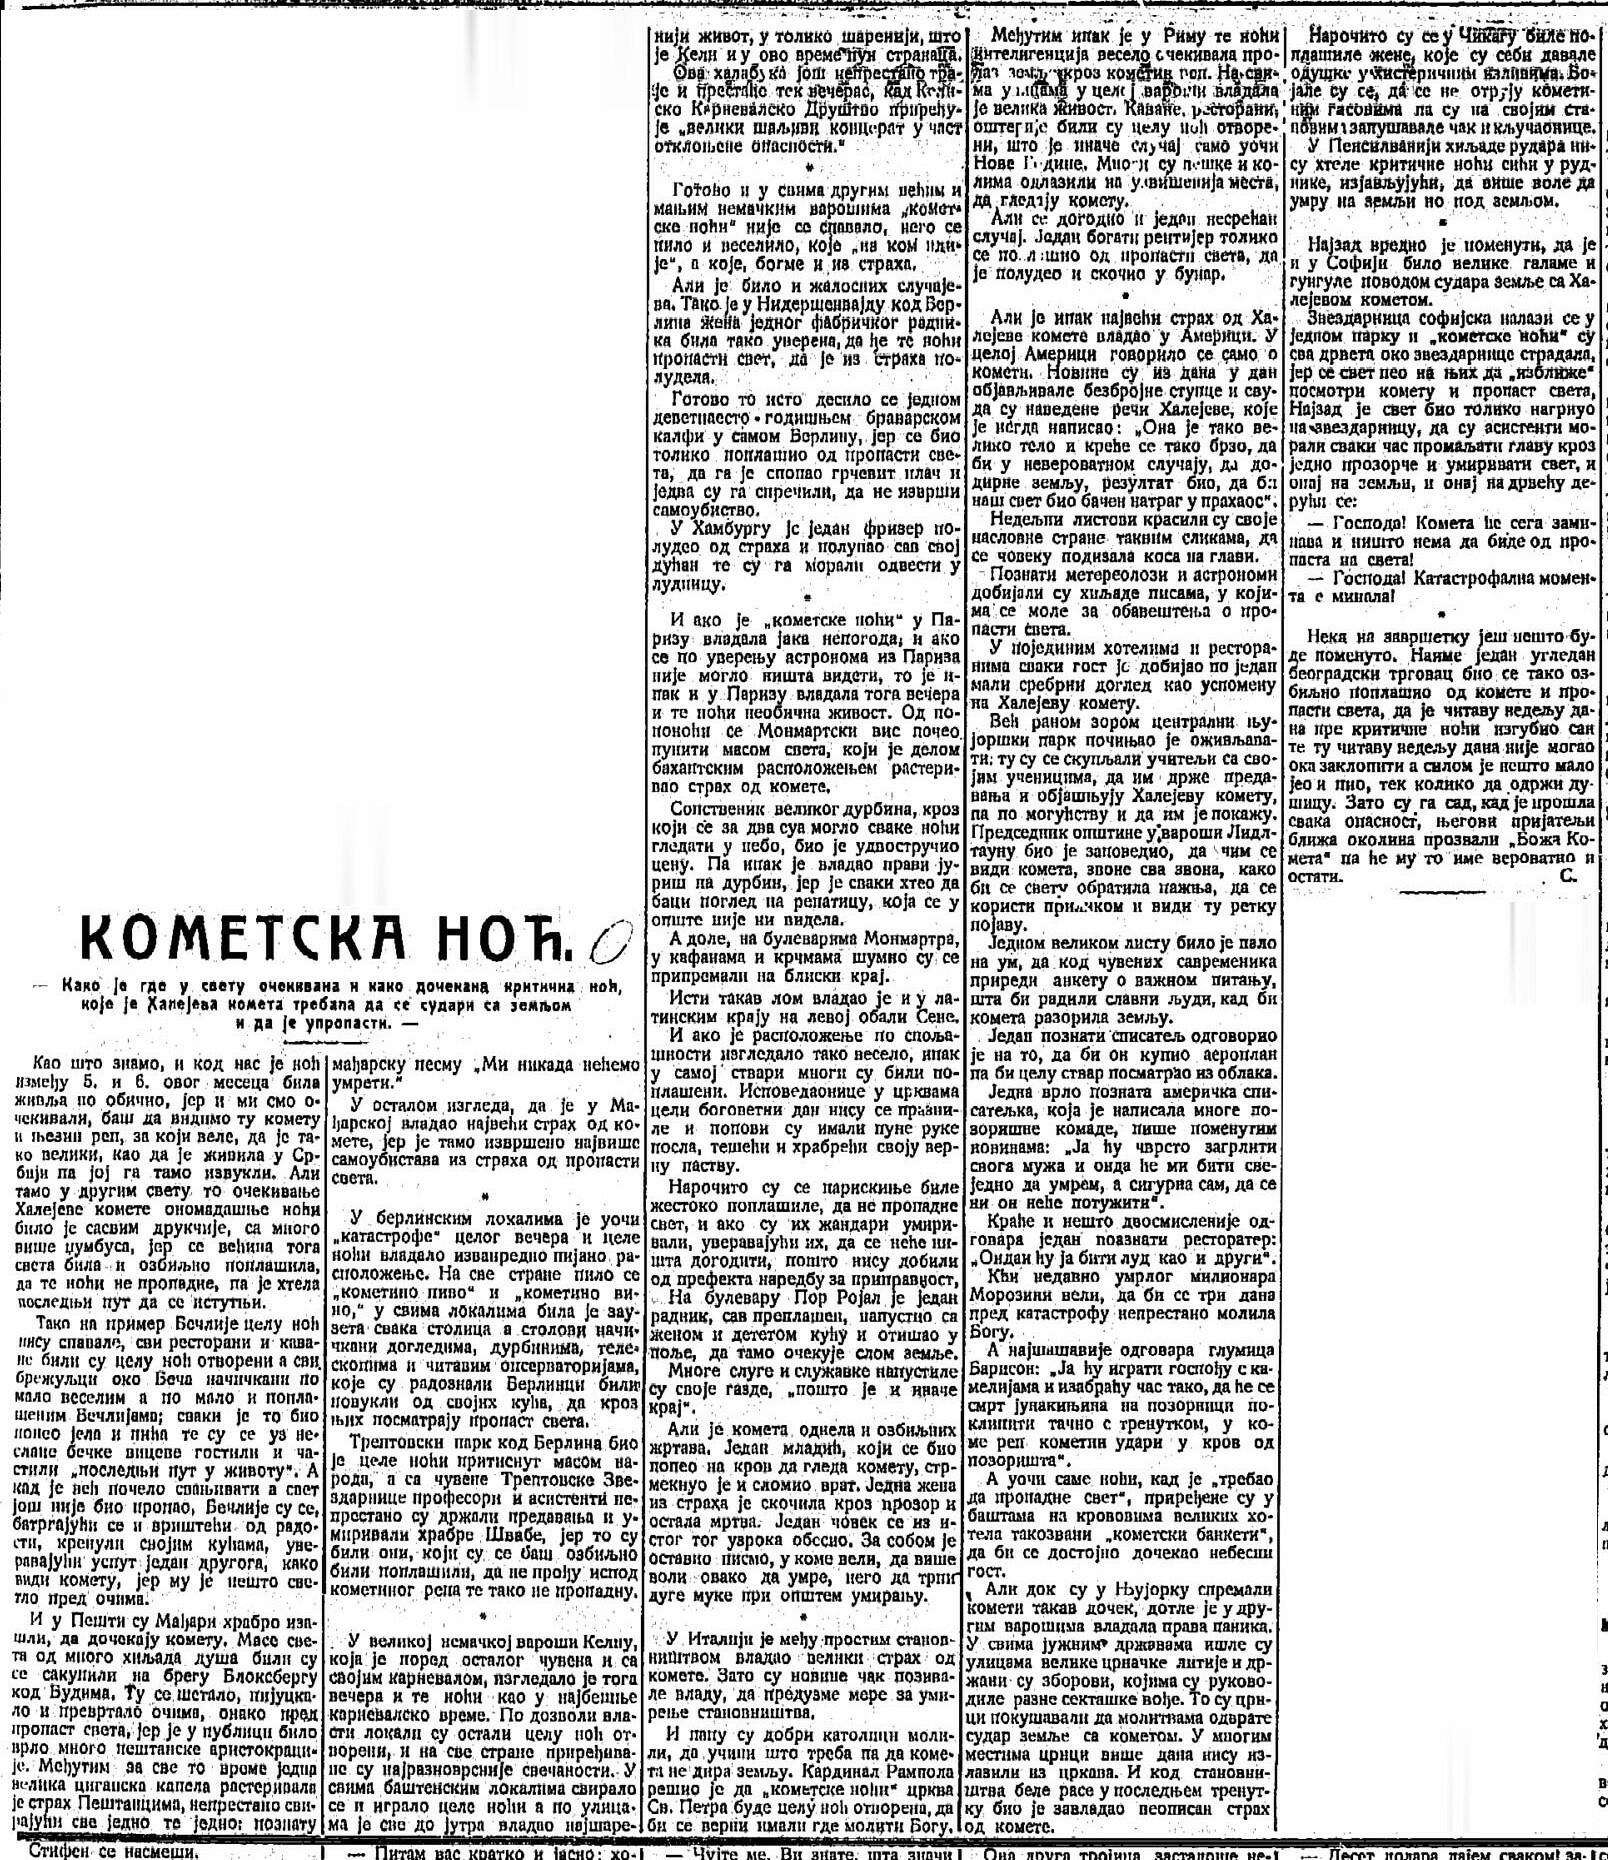 istorijski fragmenti - Page 19 Kometa11